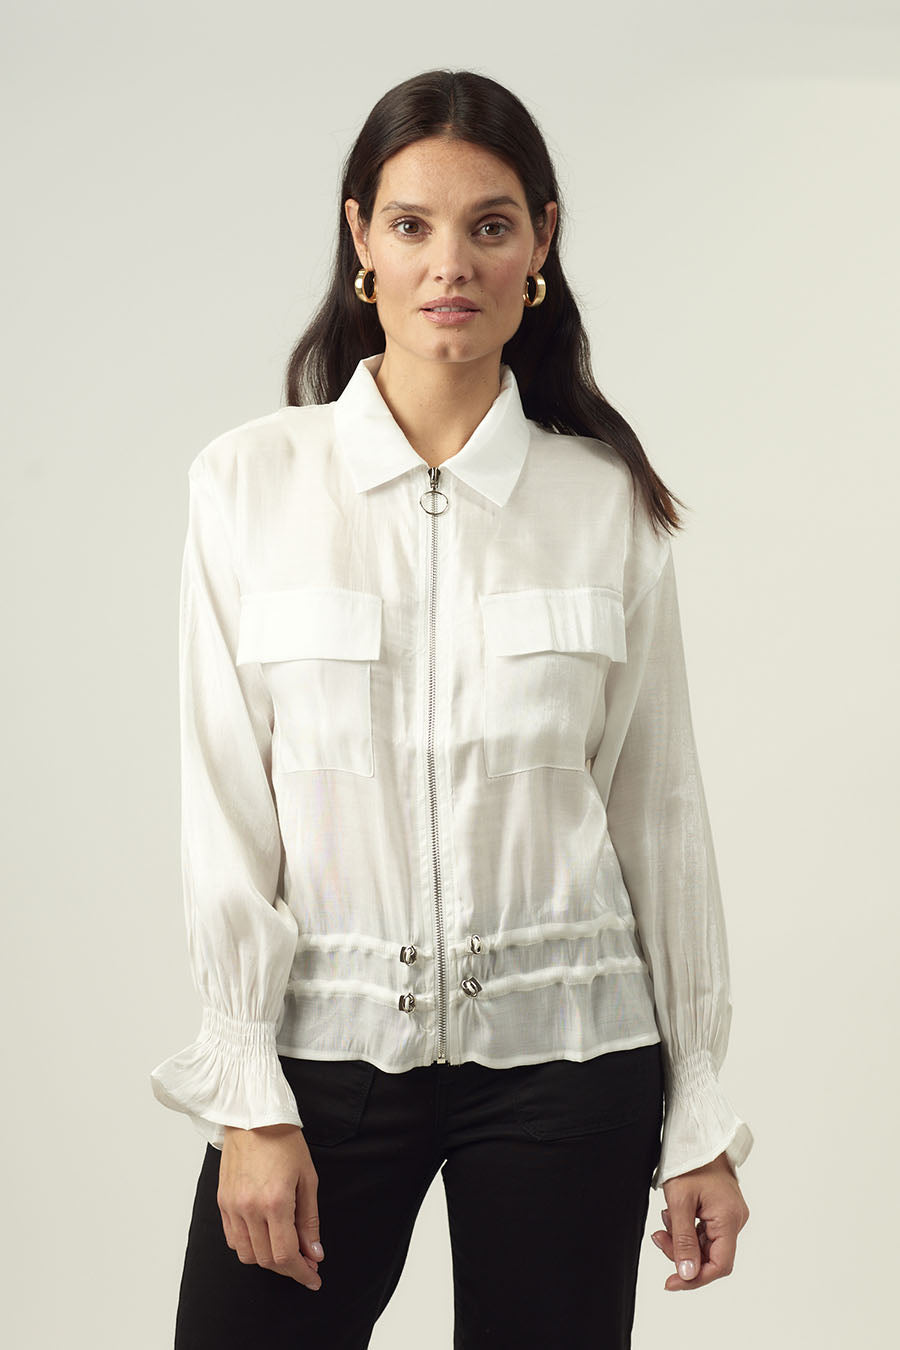 Γυναικείο πουκάμισο Medeea, Λευκό 4